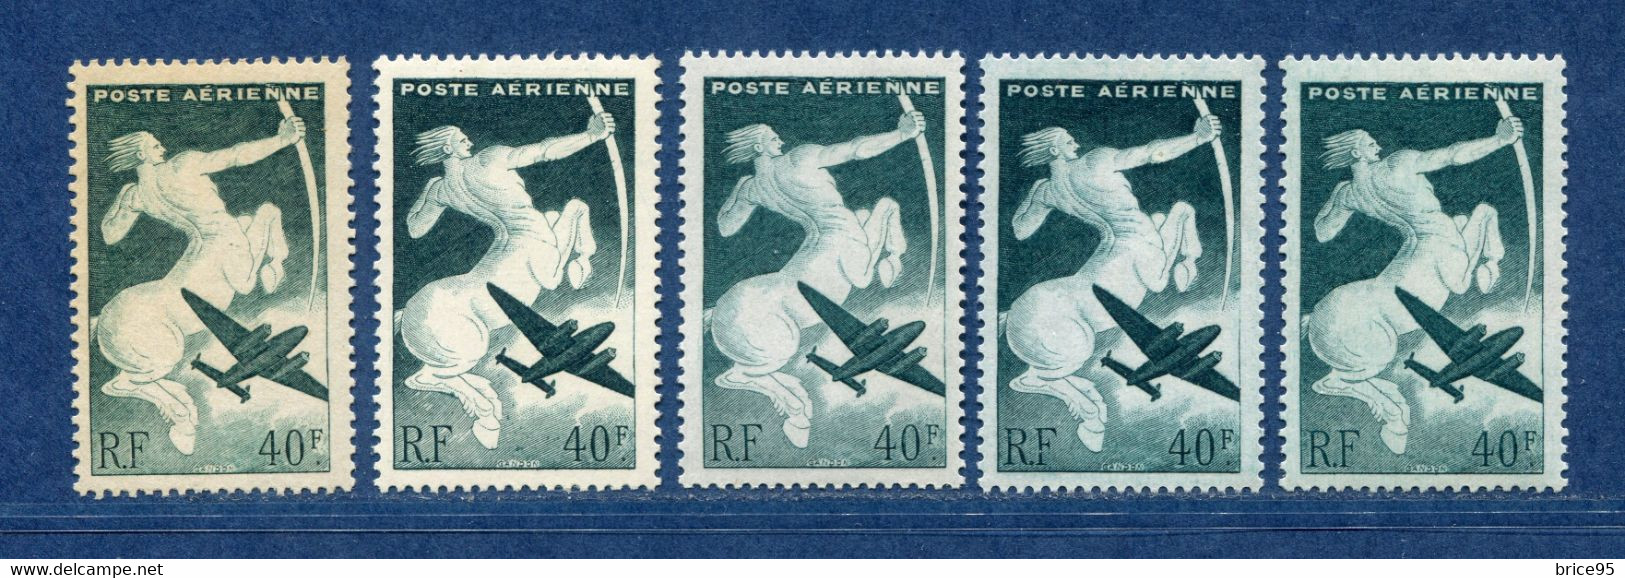 ⭐ France - Variété - YT PA N° 16 - Poste Aérienne - Couleurs - Pétouilles - Neuf Sans Charnière - 1946 ⭐ - Ungebraucht